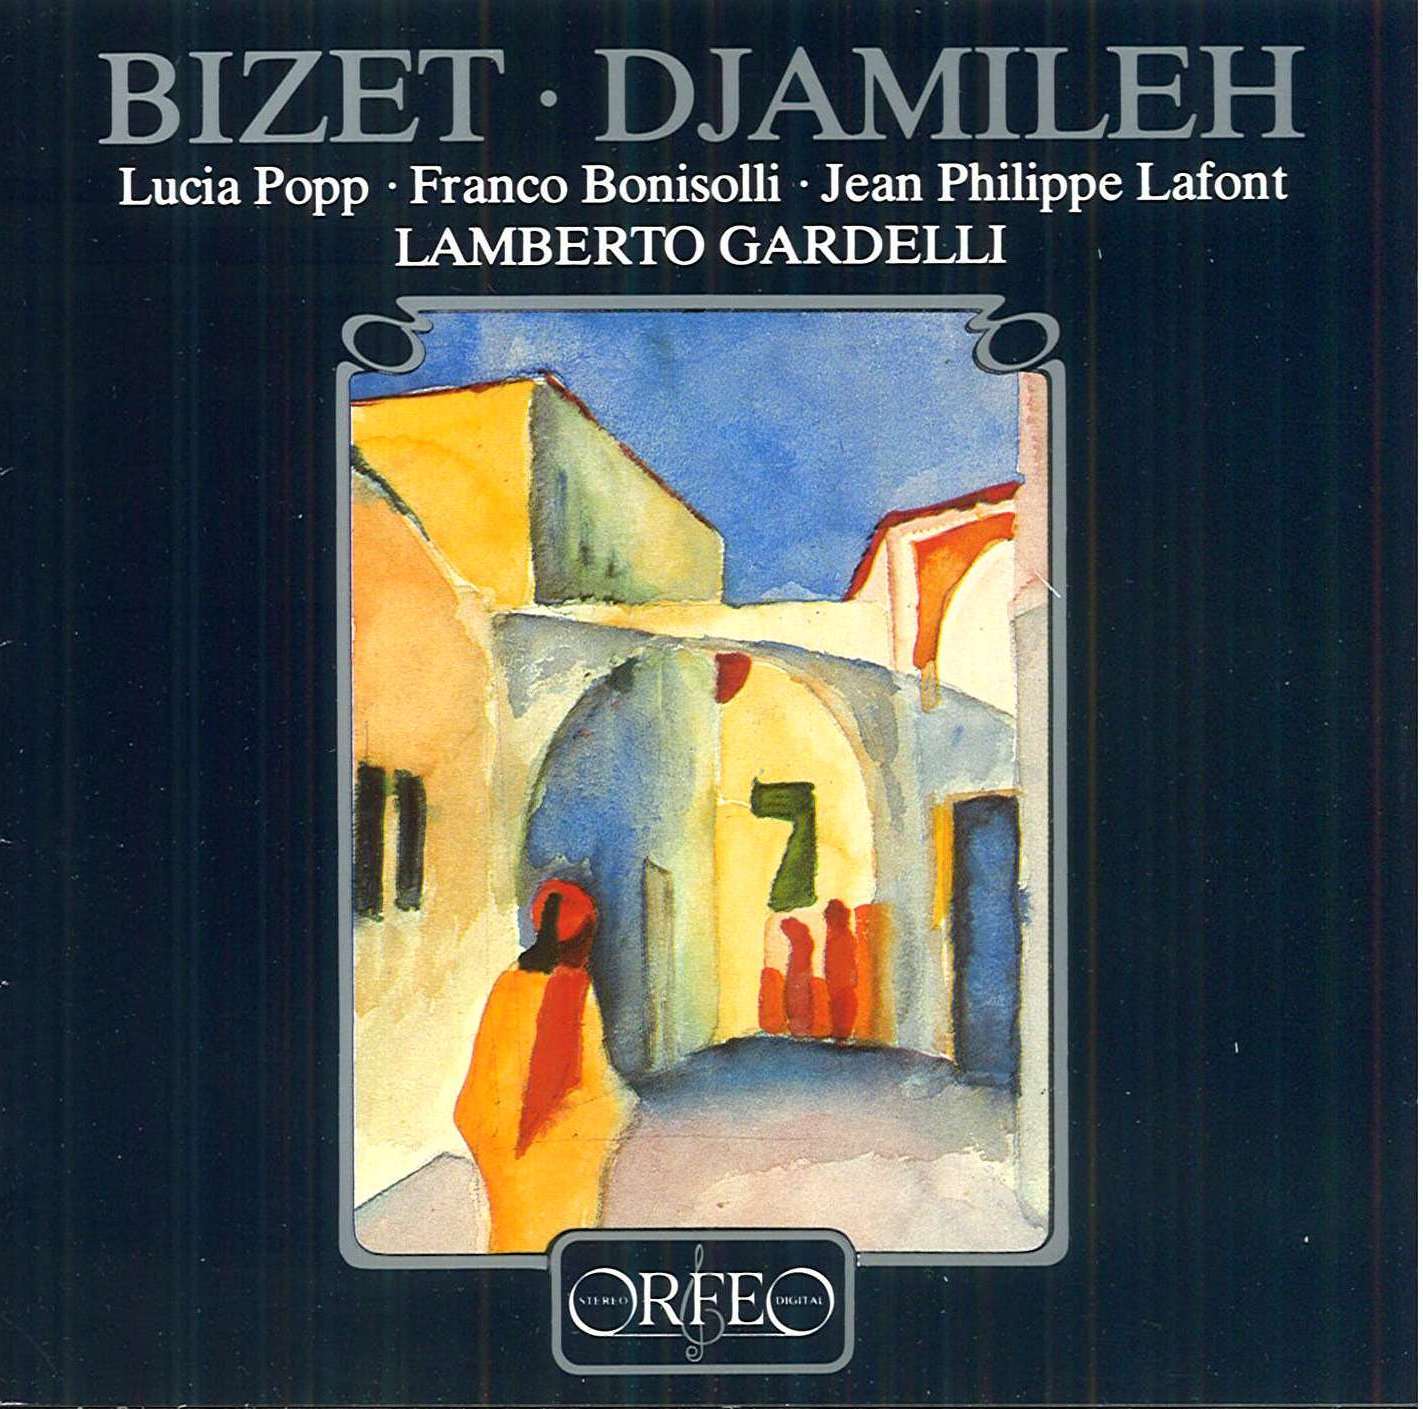 Bizet - Djamileh - Lucia Popp, Franco Bonisolli, Lamberto Gardelli